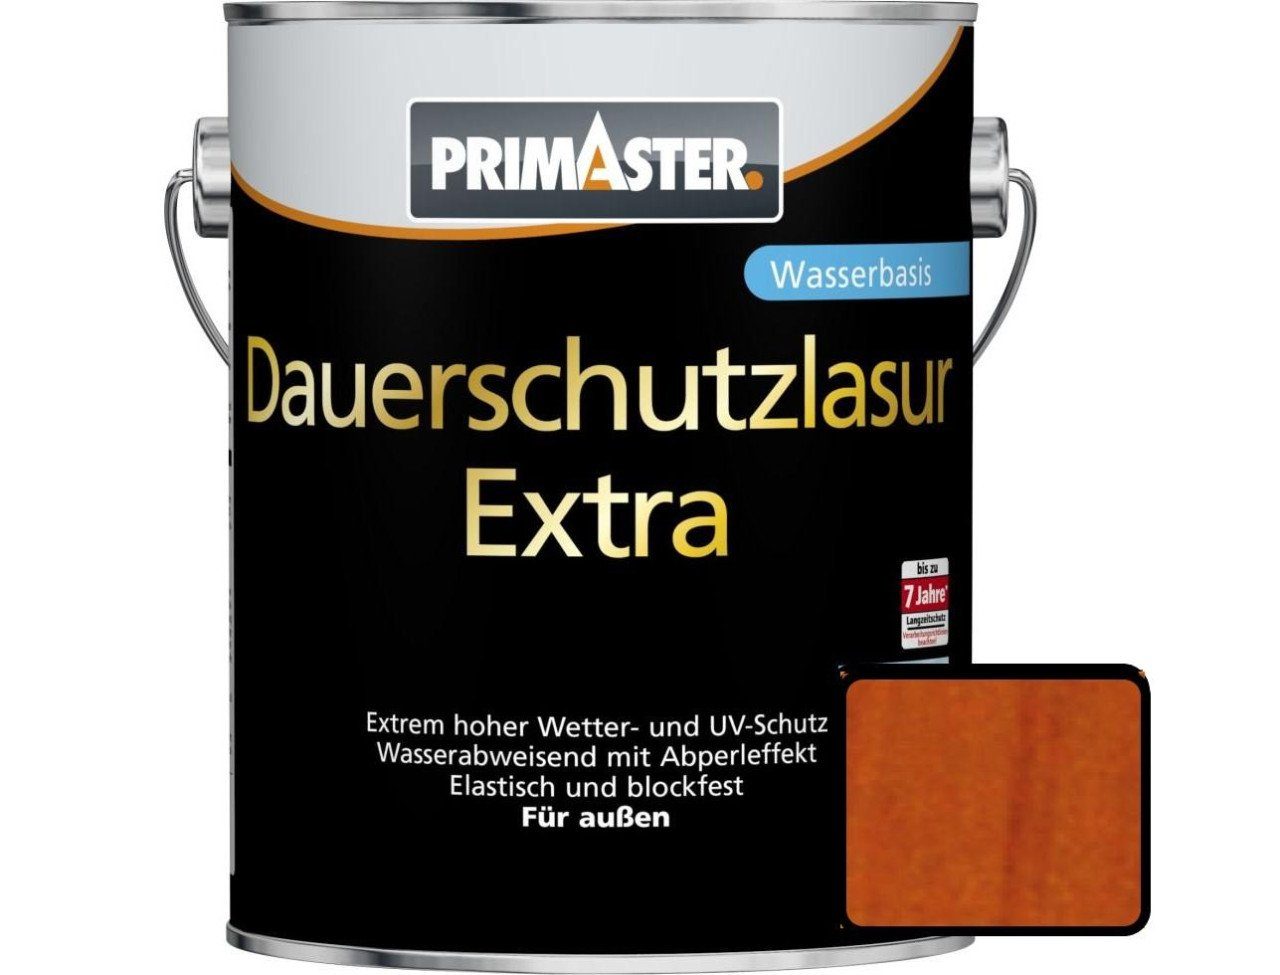 Extra Primaster Lasur Primaster mahagoni ml 750 Dauerschutzlasur